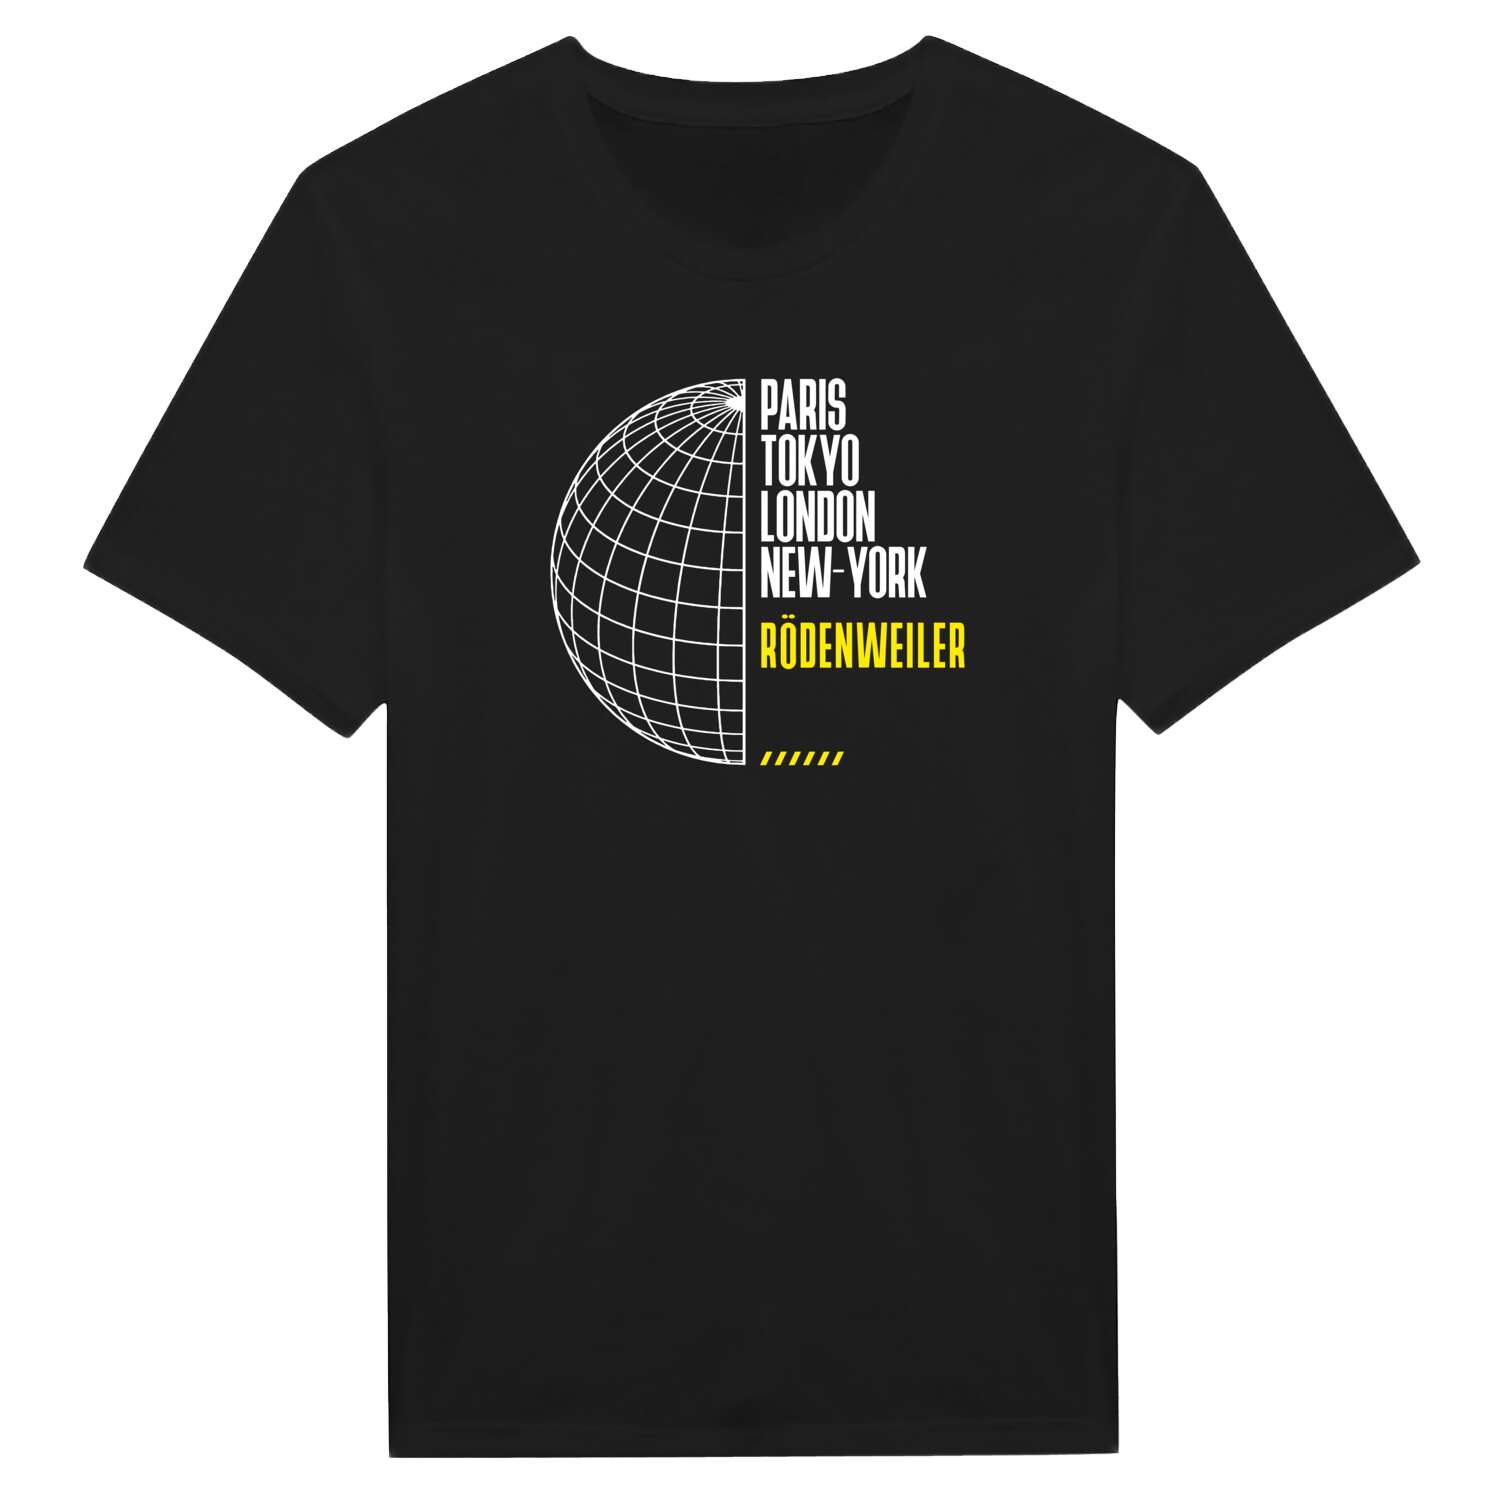 Rödenweiler T-Shirt »Paris Tokyo London«